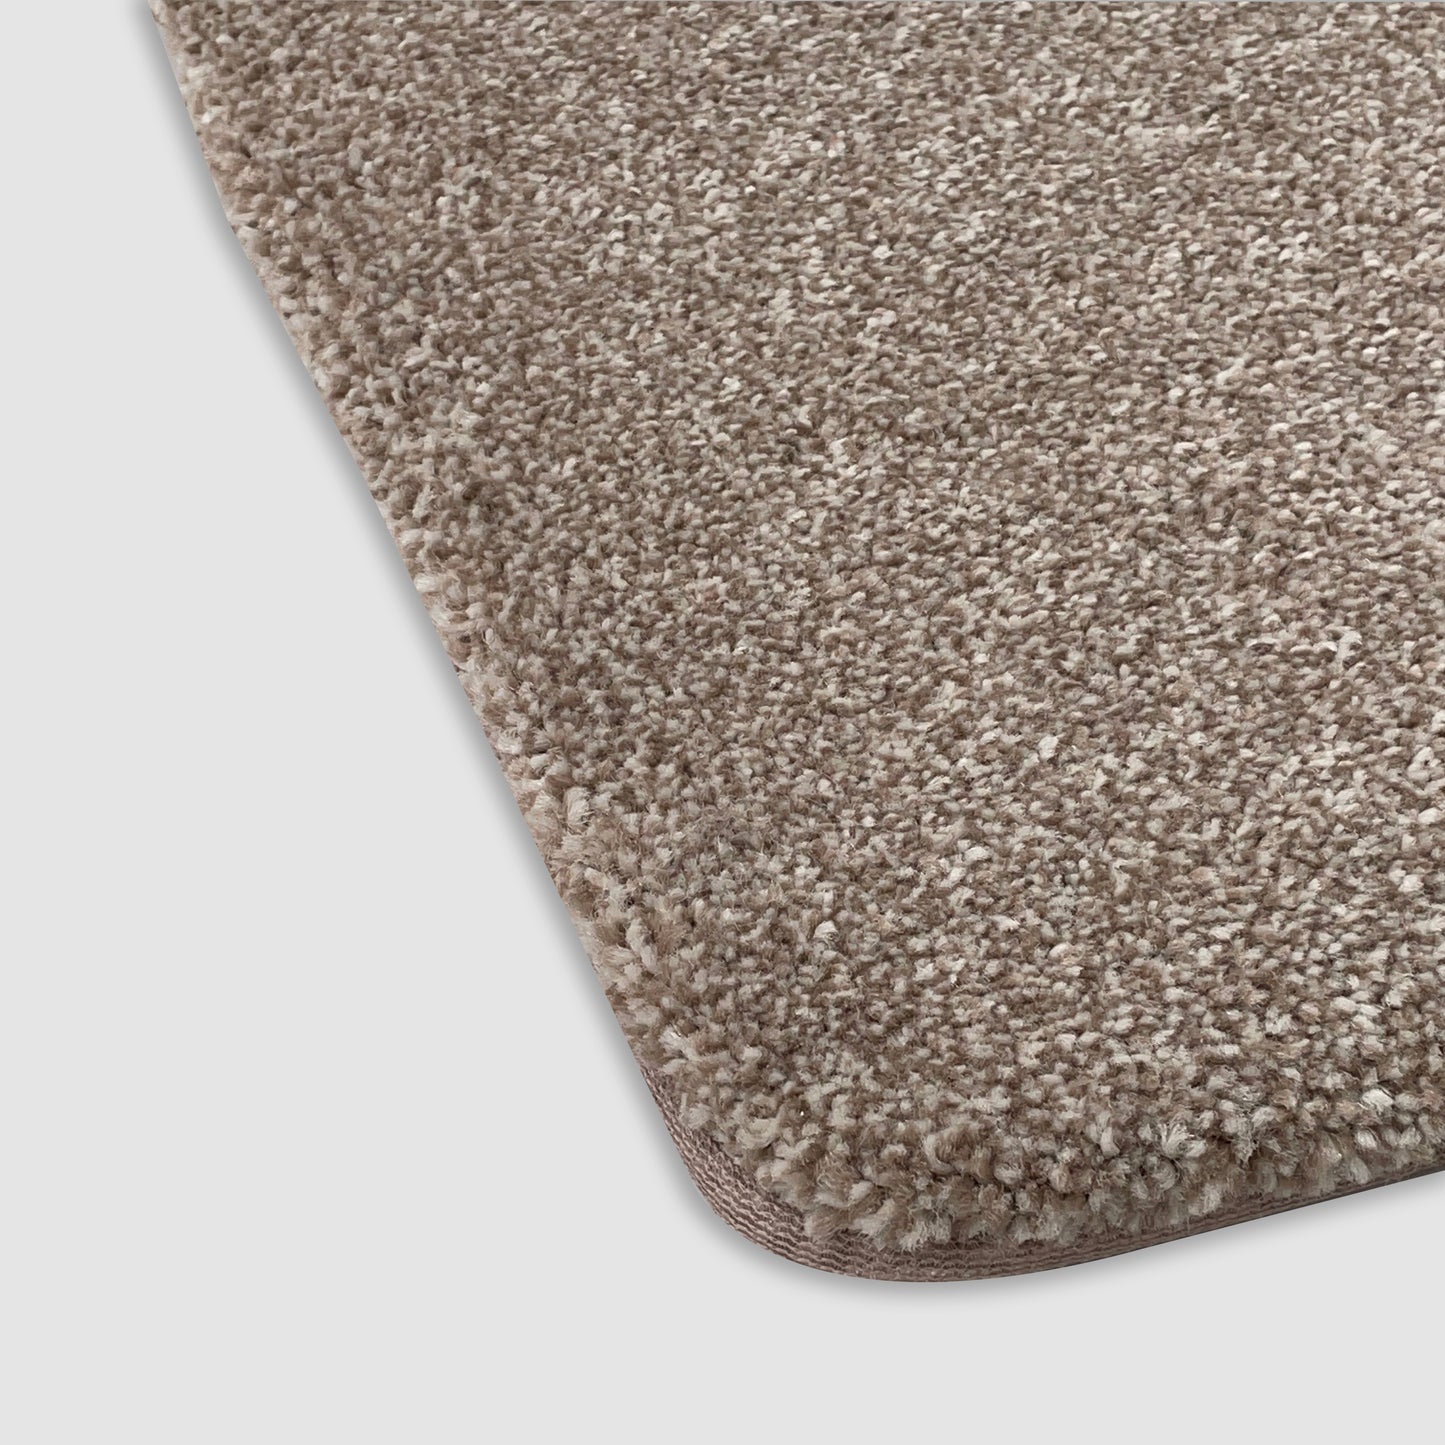 Venice Elite Super-Soft Deep Pile Tufted Carpet Collection